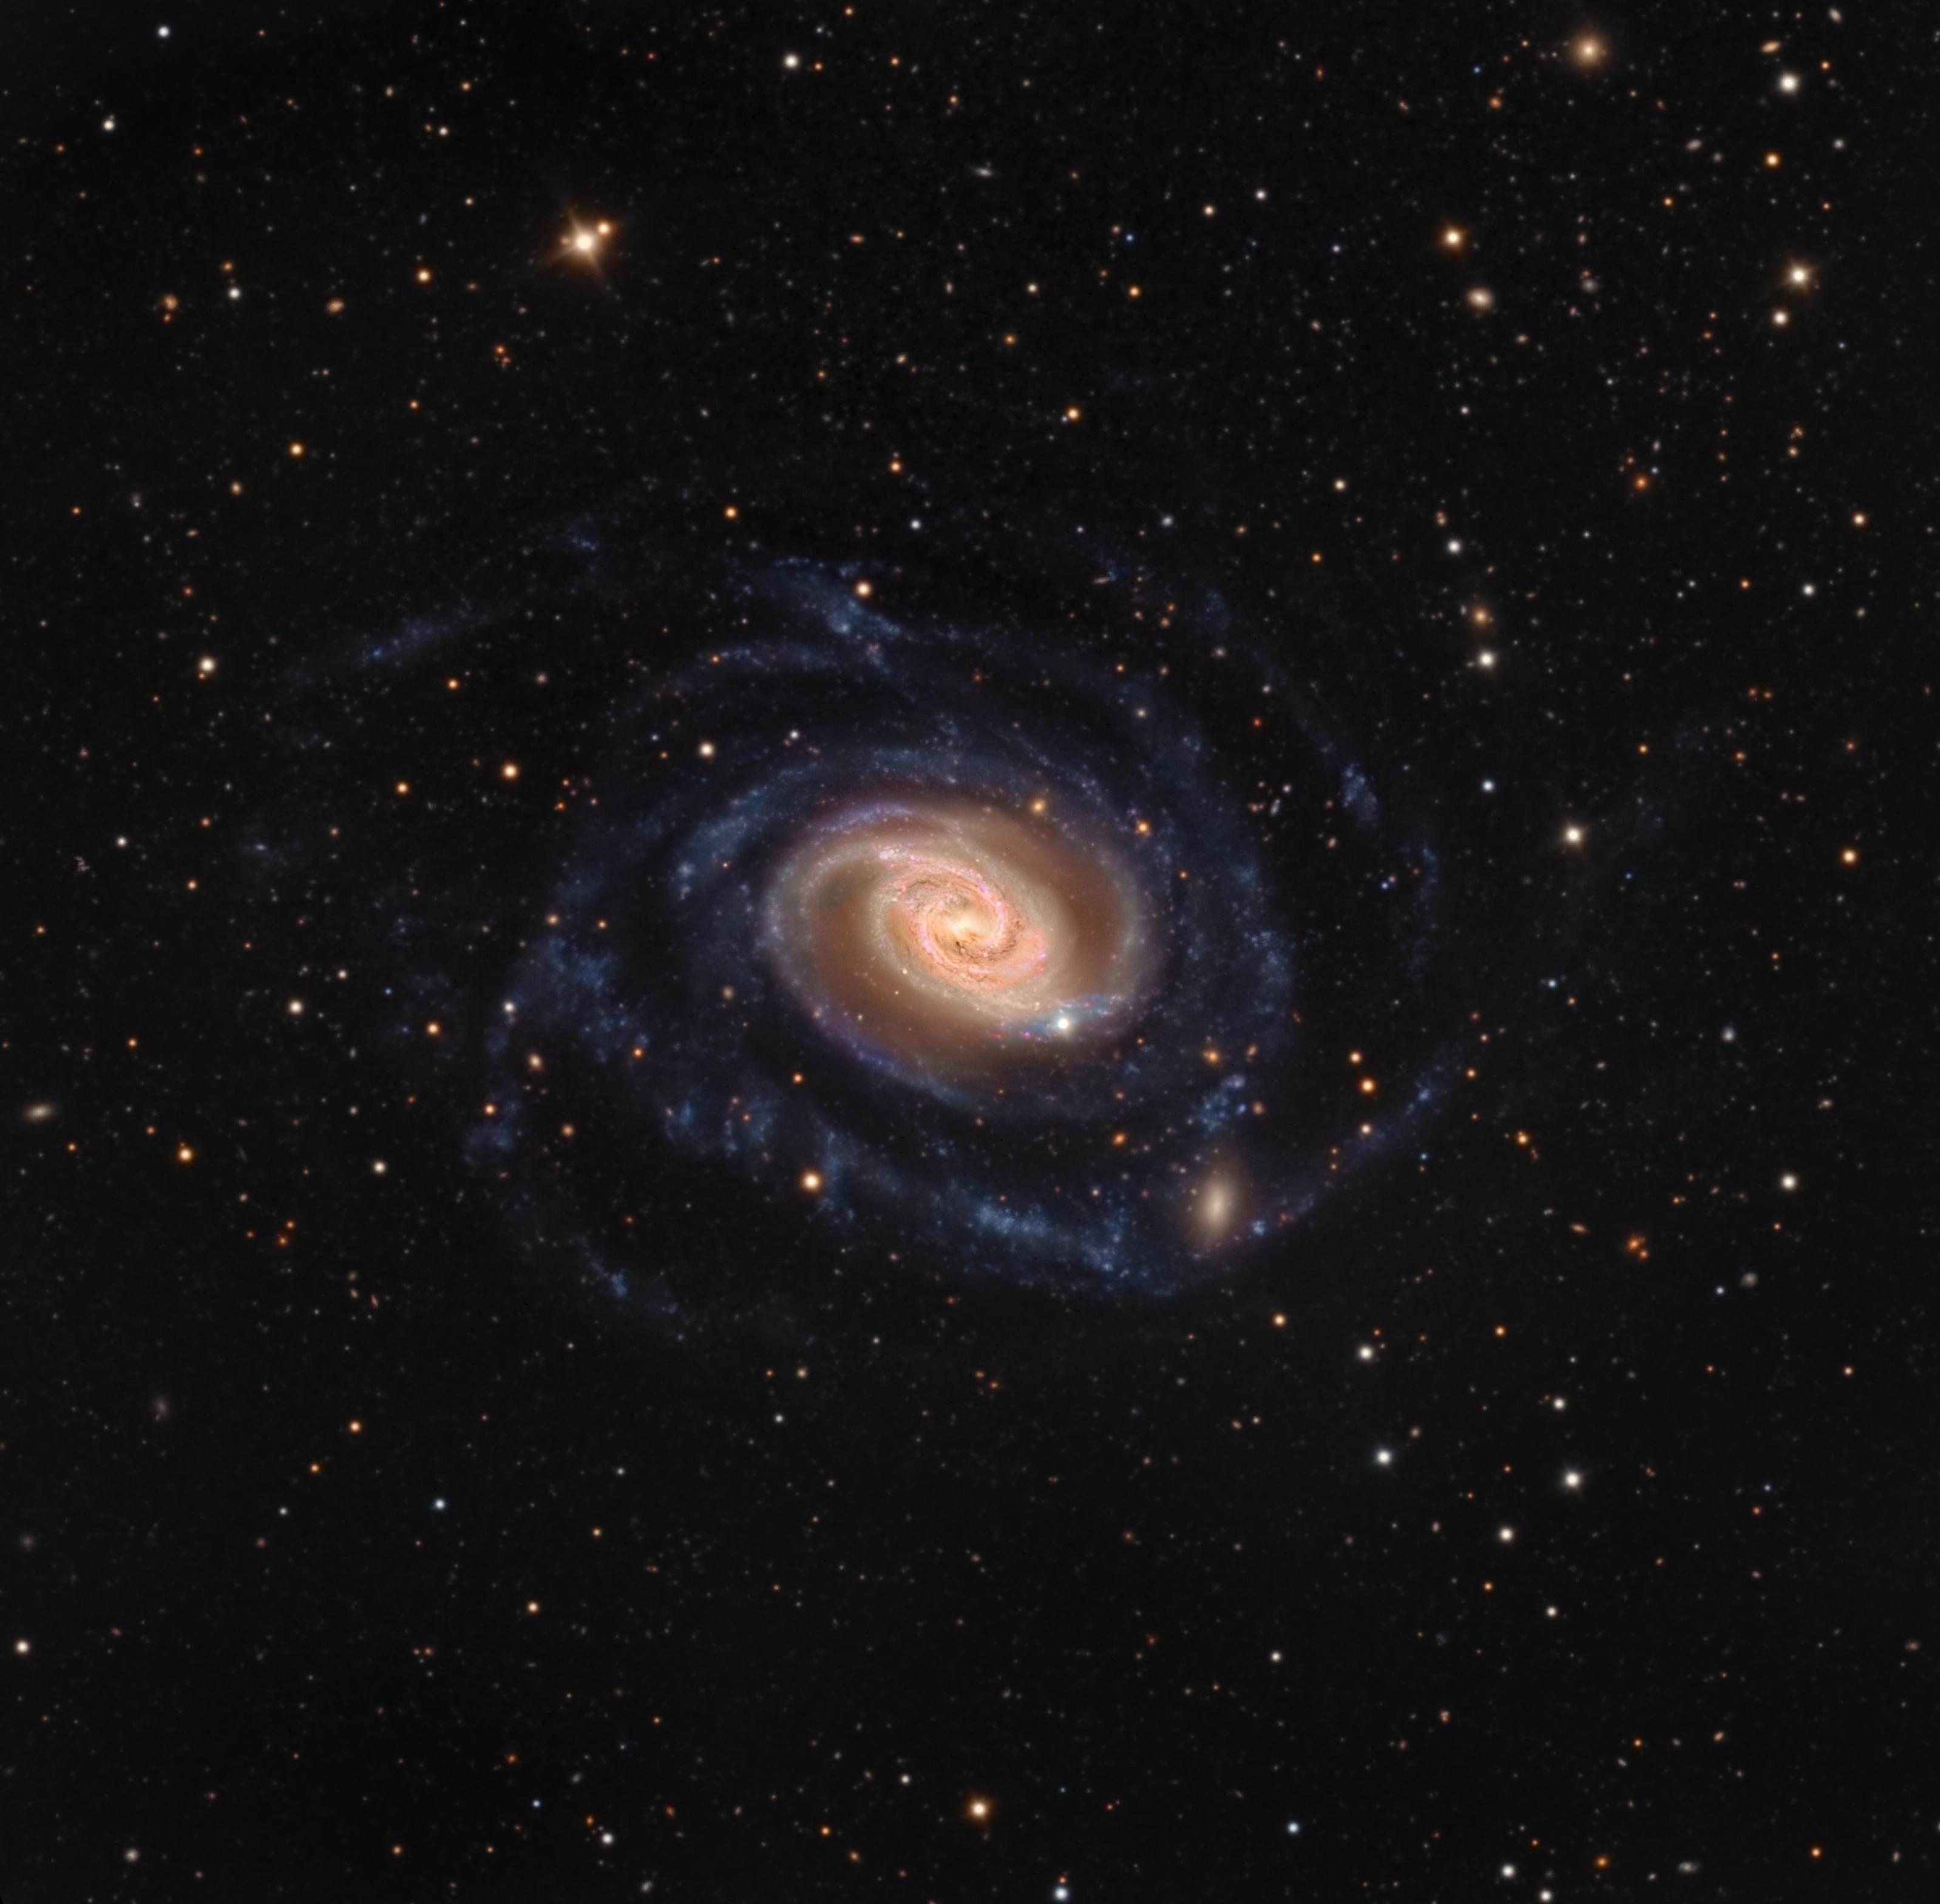 مجرة إن‌جي‌سي 289 الحلزونية بأذرعها الملتفة وقرصها الملوّن مع مجرّة مصاحبة صغيرة زغِبة في الأسفل قرب أحد الأذرع. توجد نجوم مدبّبة في المقدمة.